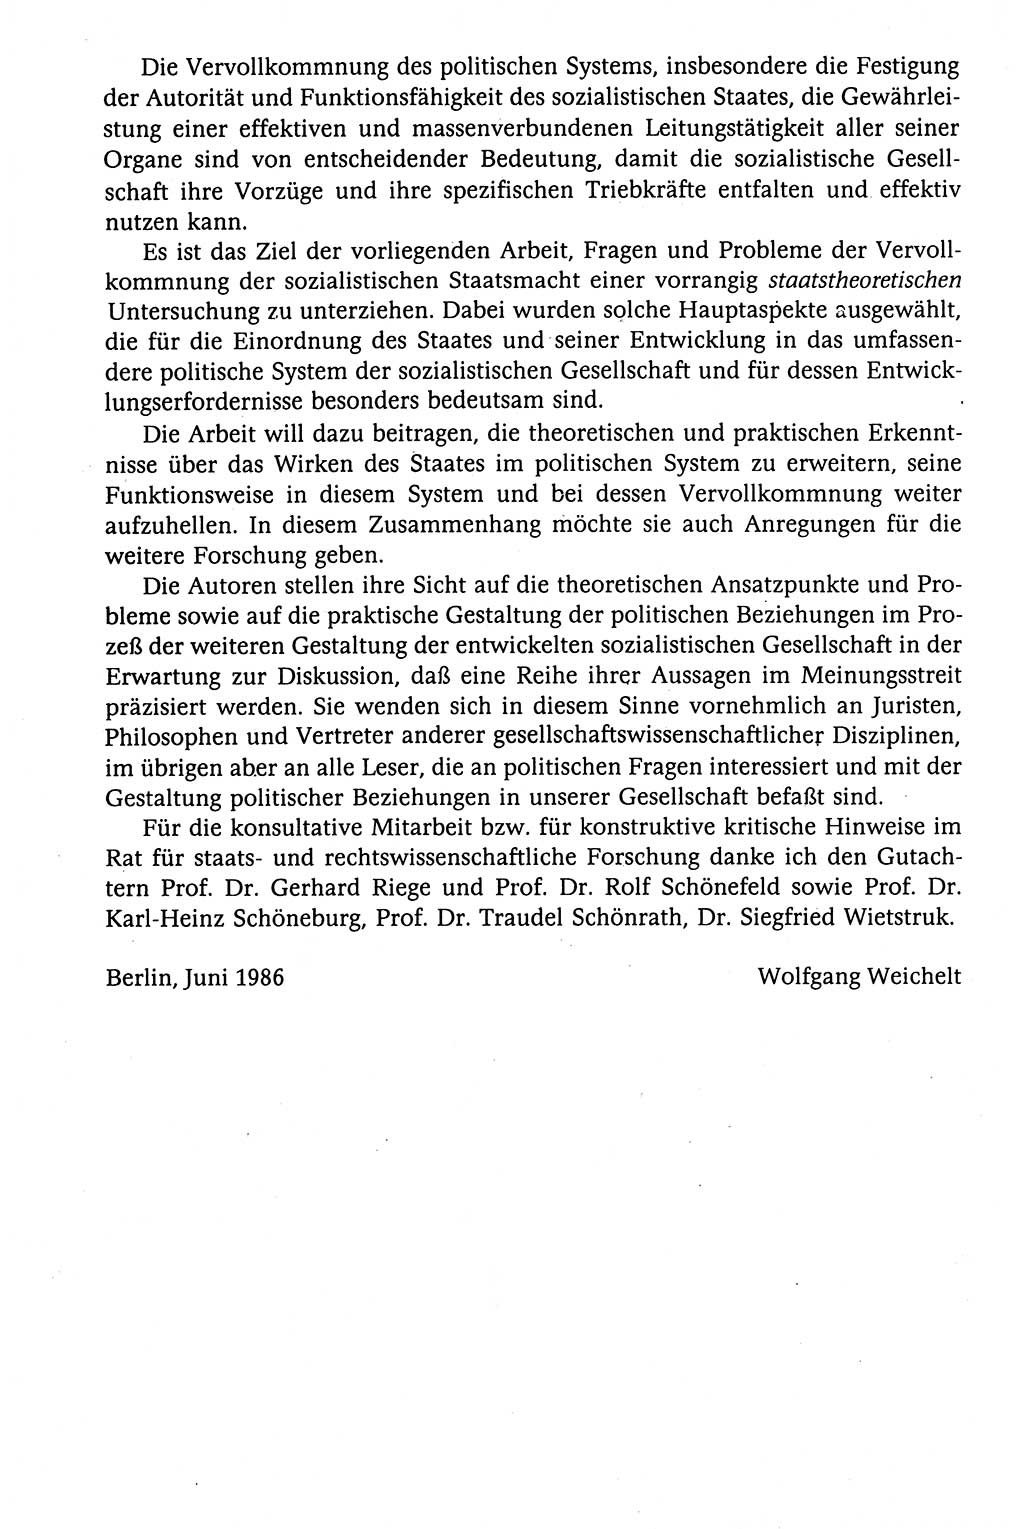 Der Staat im politischen System der DDR (Deutsche Demokratische Republik) 1986, Seite 10 (St. pol. Sys. DDR 1986, S. 10)